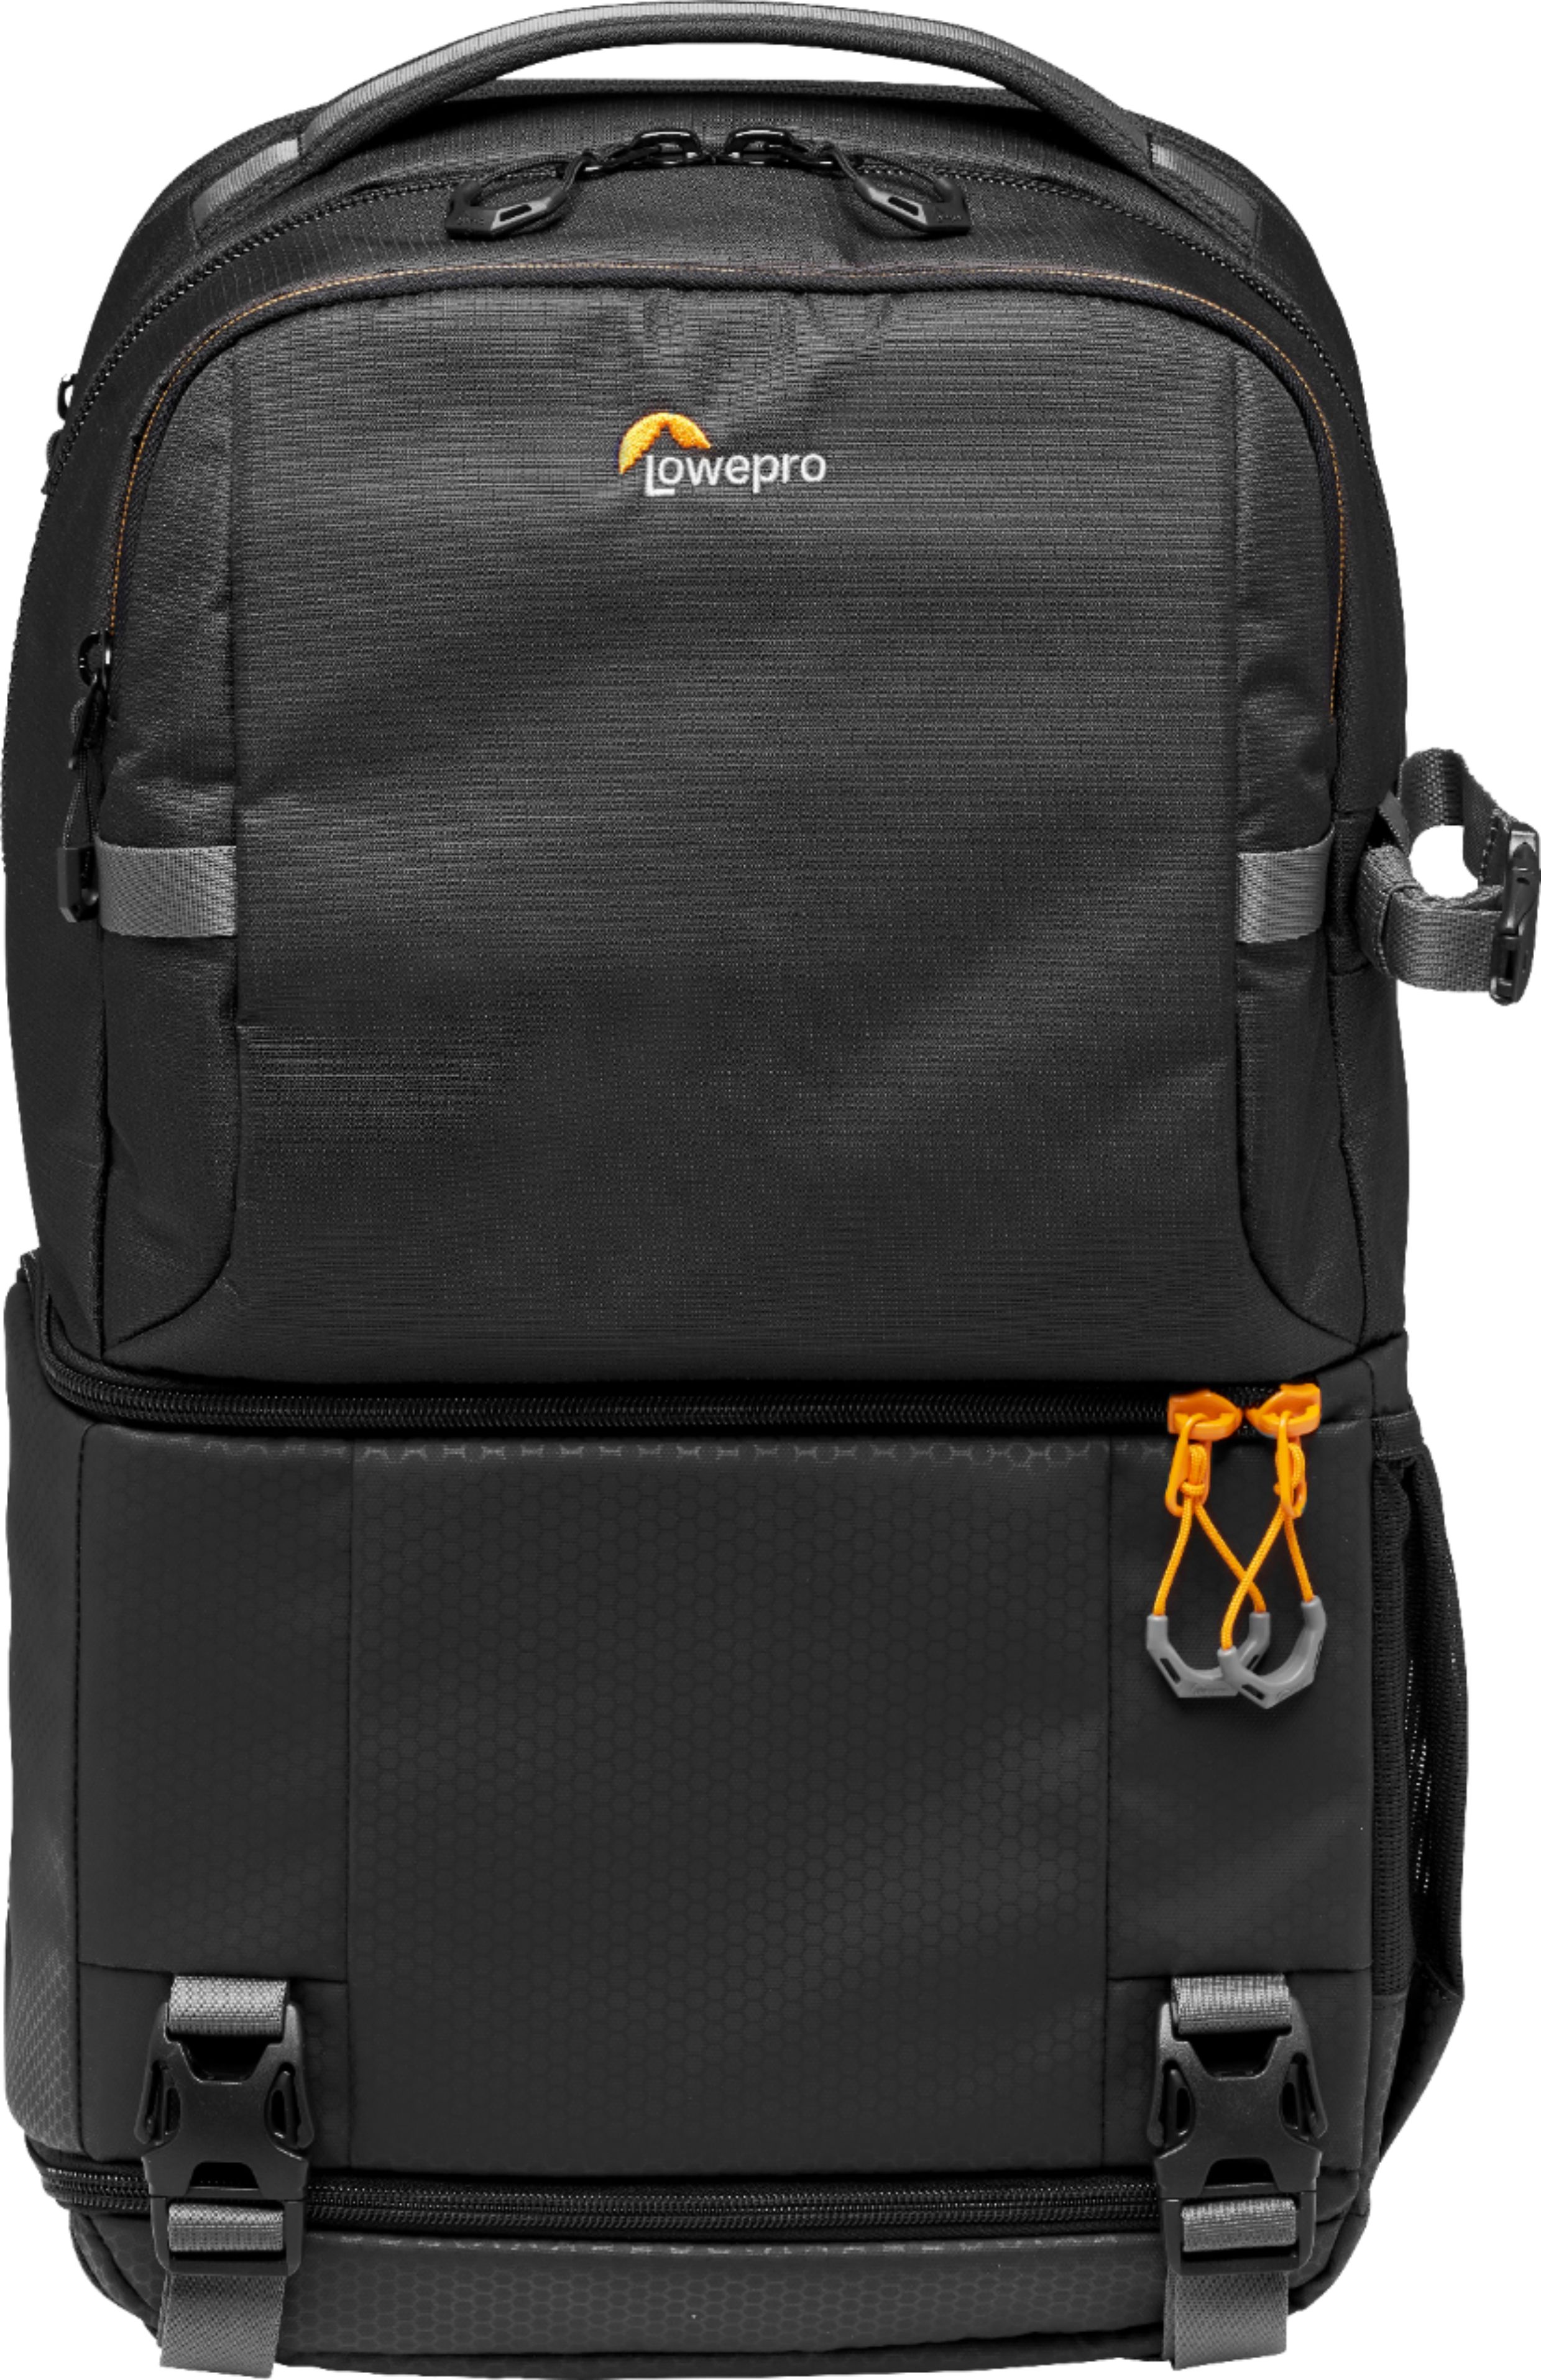 Boos preambule zijde Lowepro Fastpack Camera Backpack Black LP37333-PWW - Best Buy